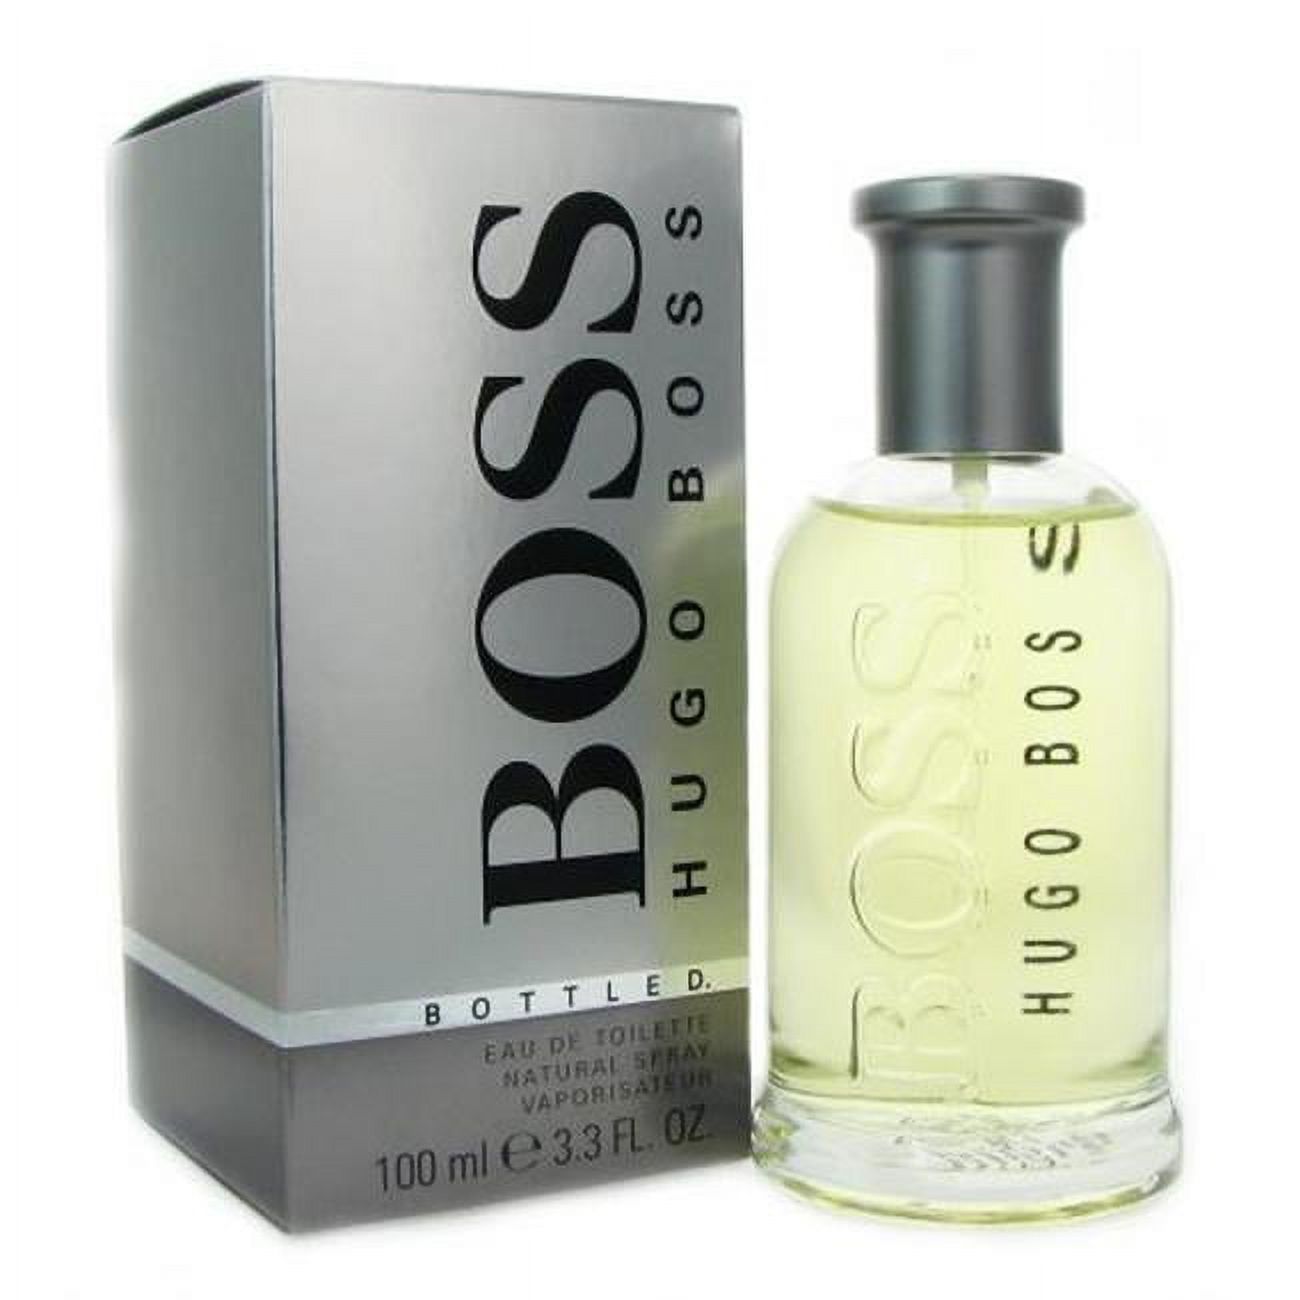 Hugo Boss Bottled Eau De Toilette Spray For Men - 3.4 Oz. - image 1 of 1